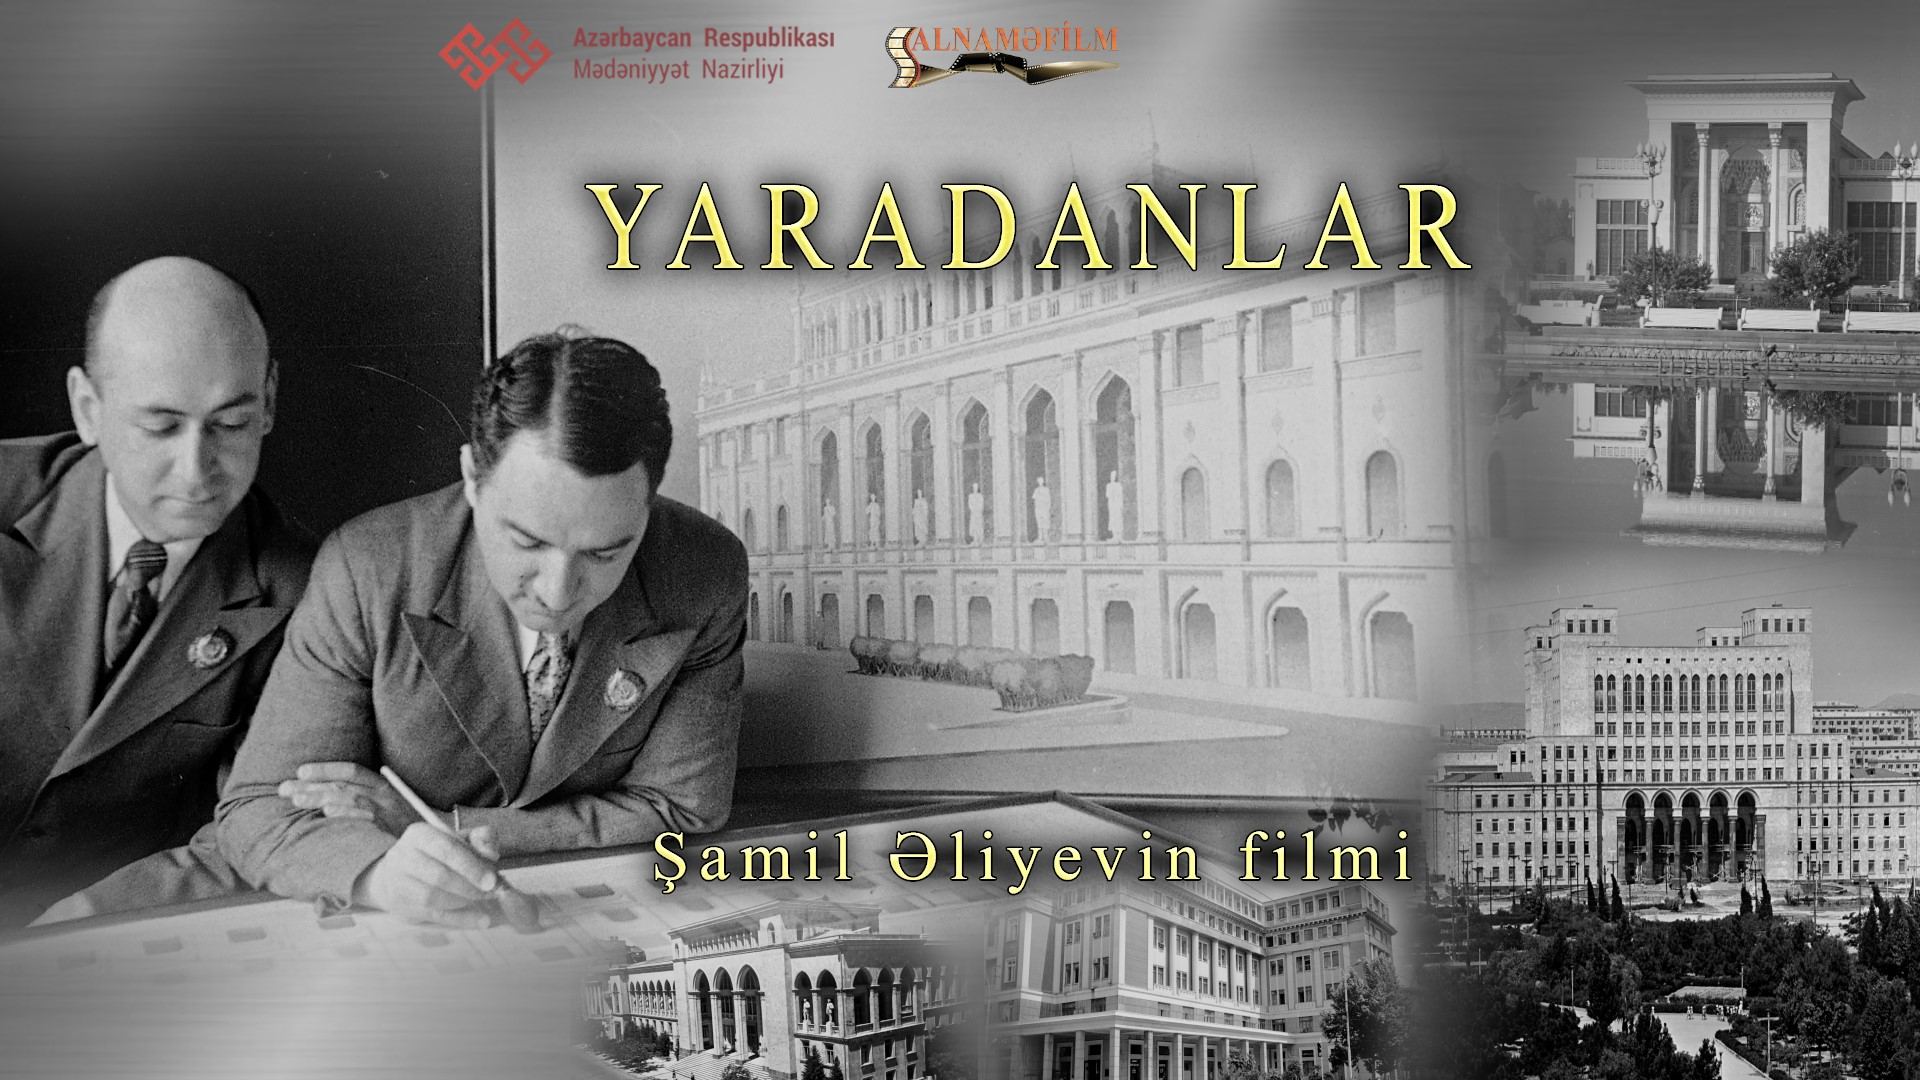 Азербайджанский фильм "Созидатели" удостоен пяти международных призов (ФОТО)